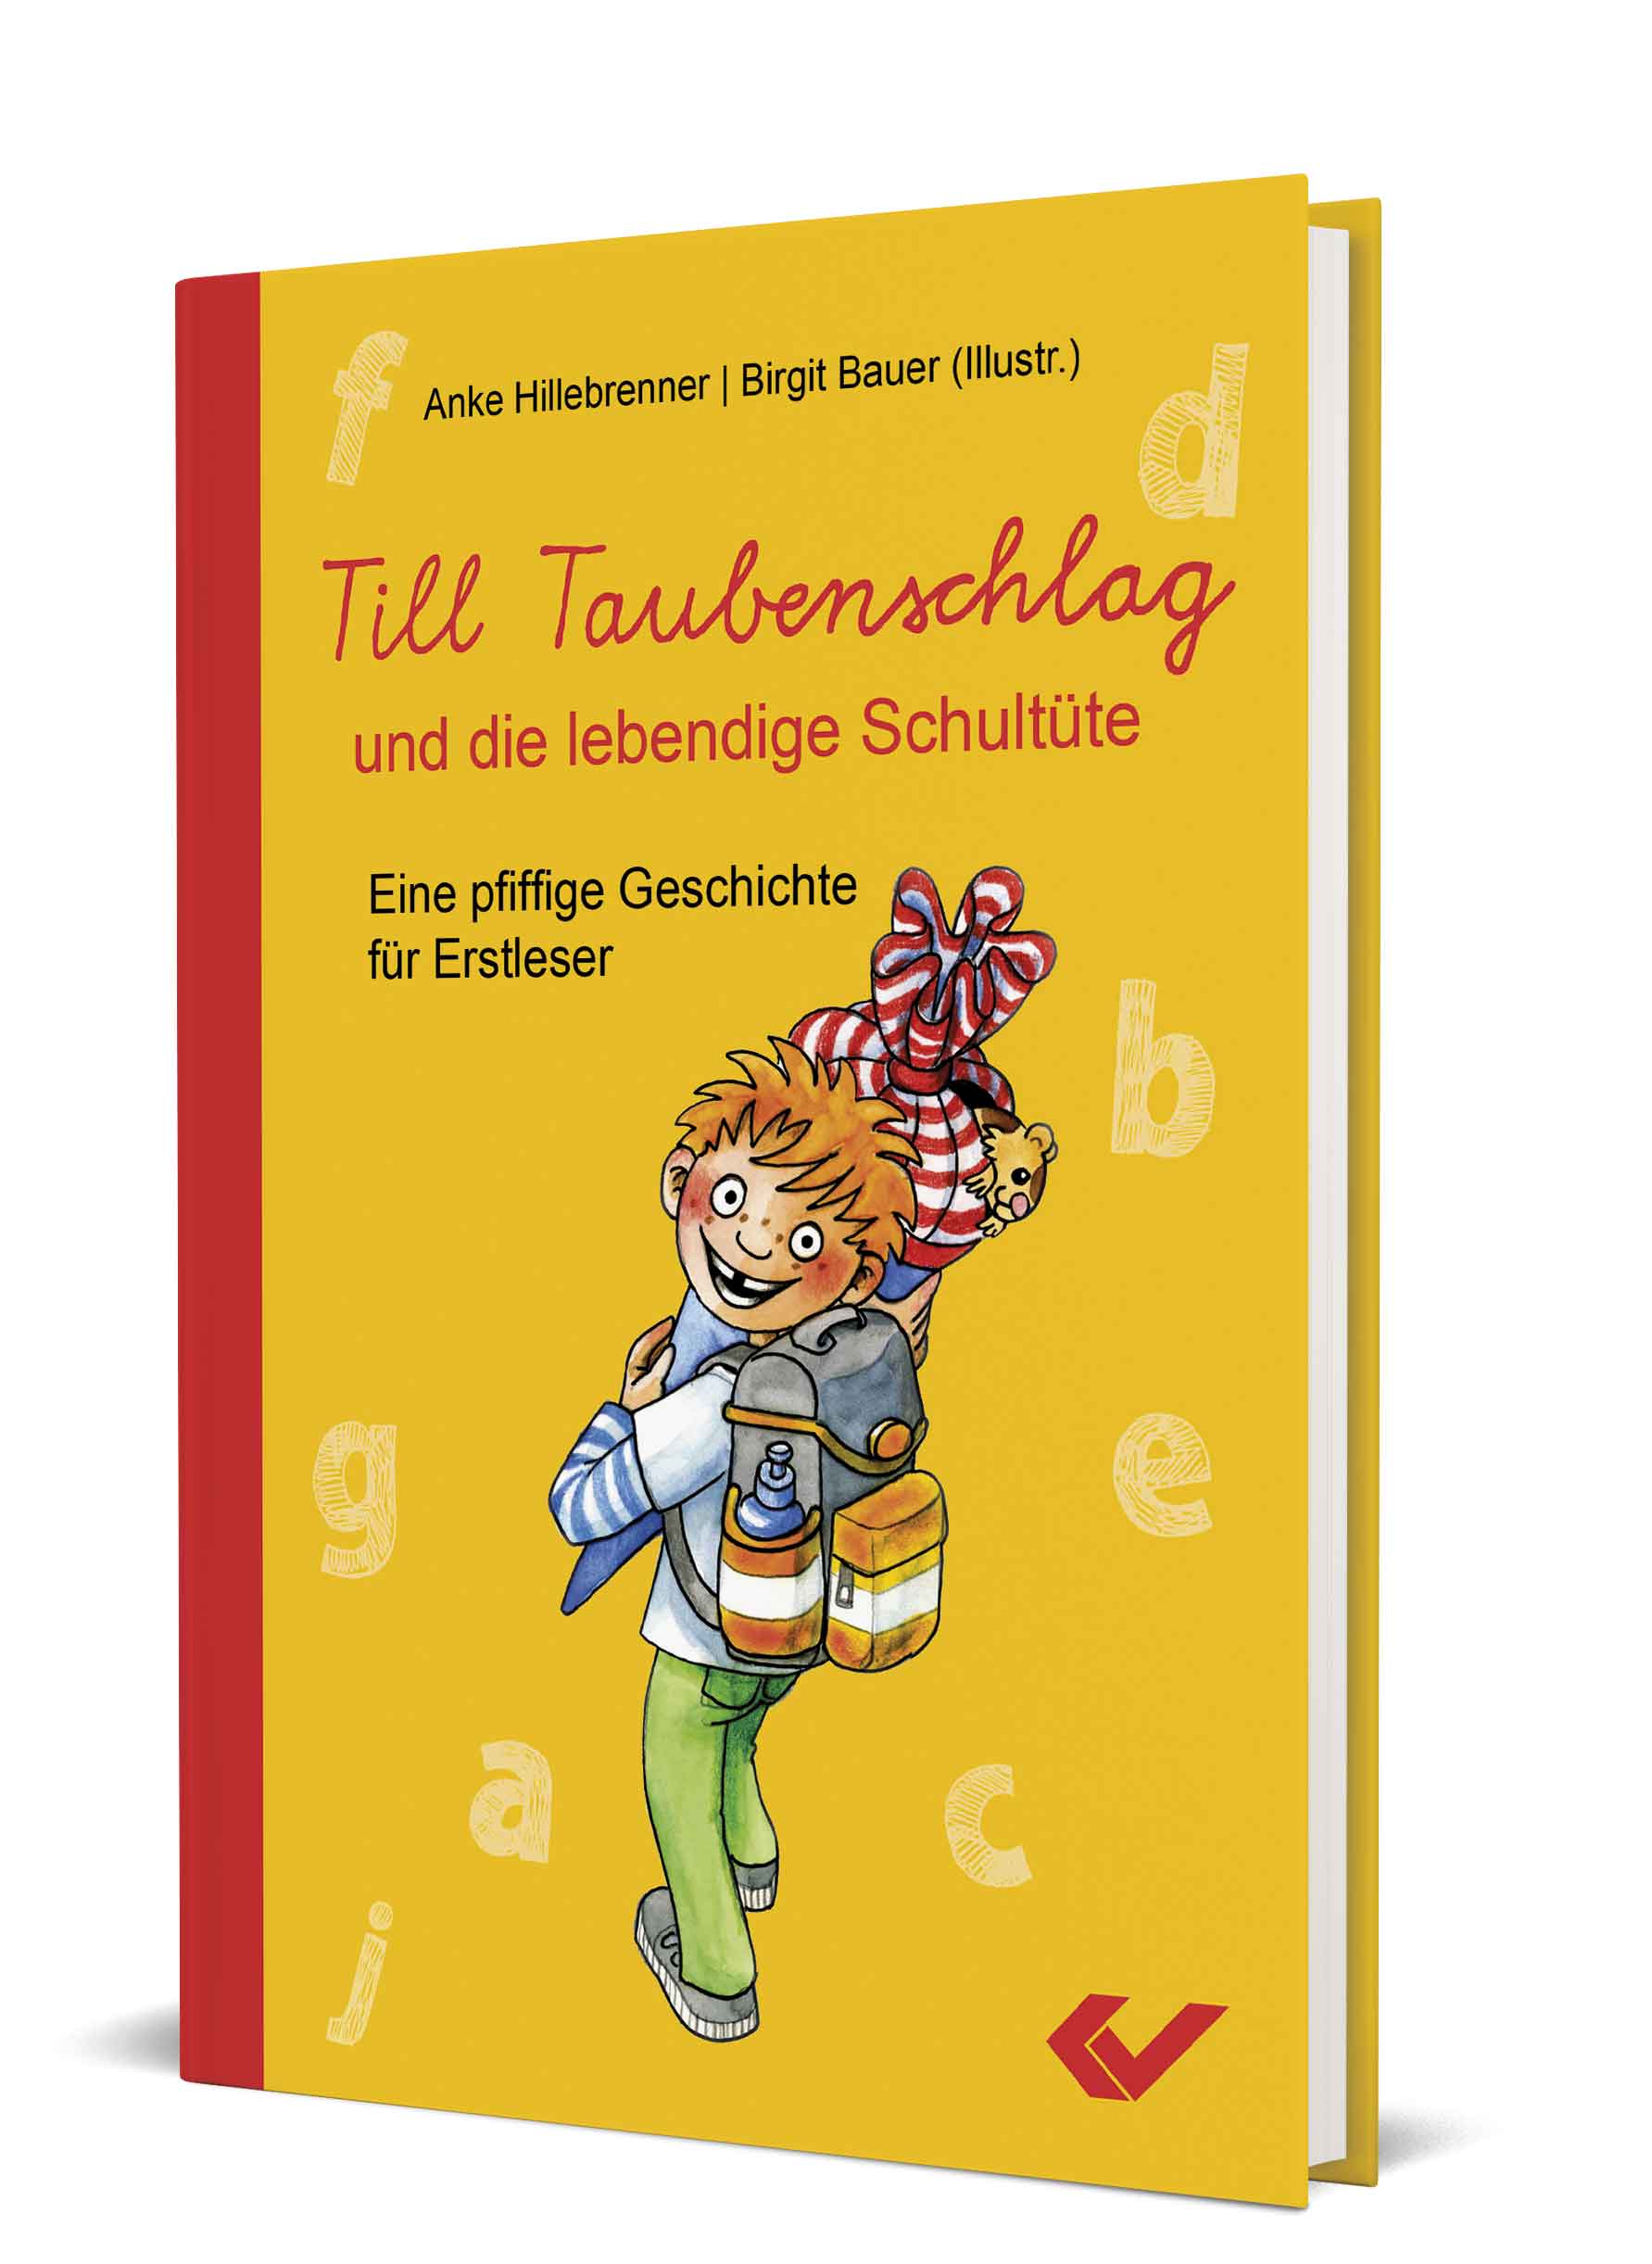 Anke Hillebrenner/Birgit Bauer (Illustr.): Till Taubenschlag und die lebendige Schultüte - Eine pfiffige Geschichte für Erstleser